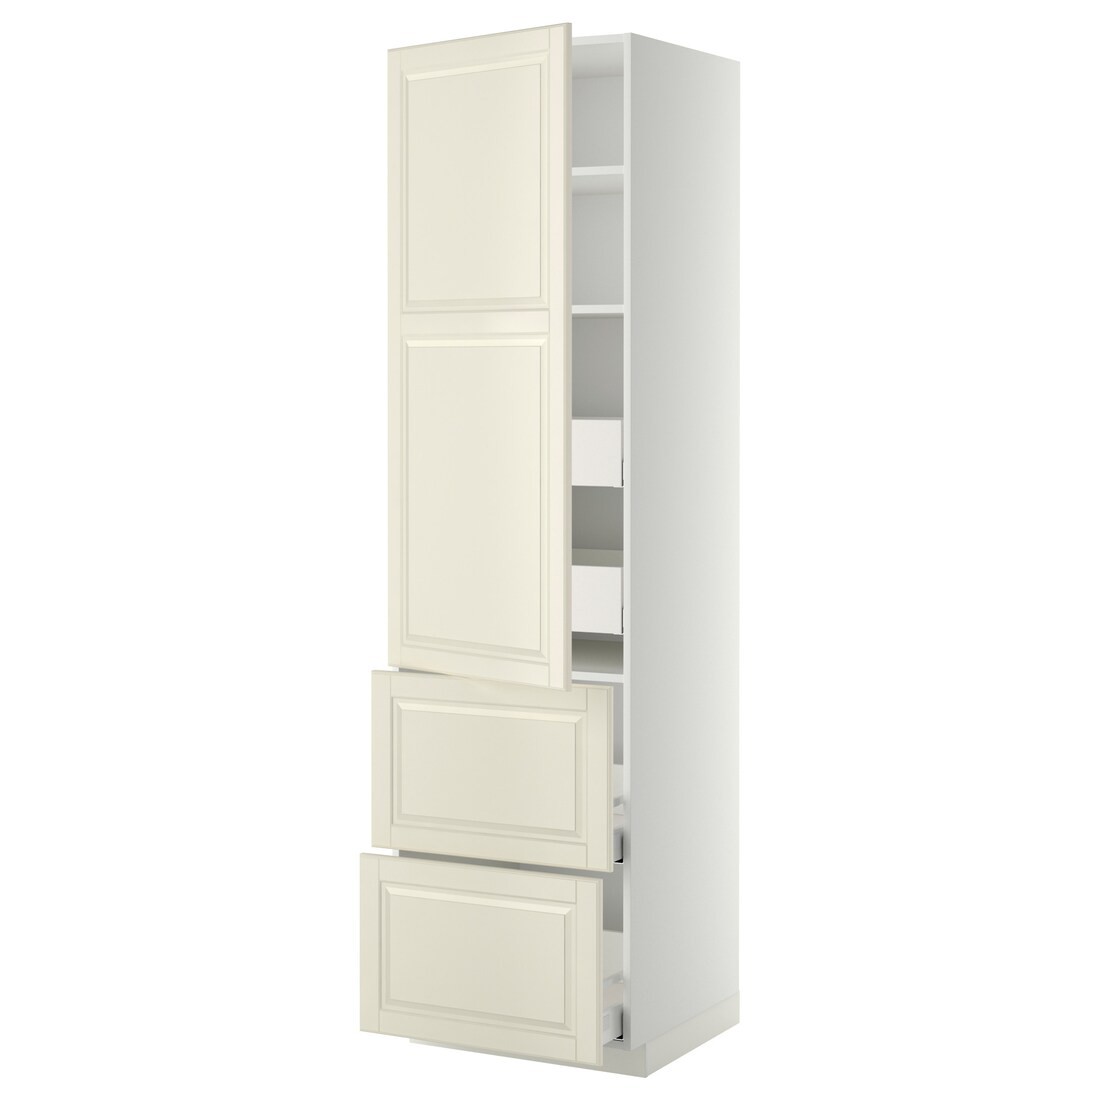 IKEA METOD МЕТОД / MAXIMERA МАКСИМЕРА Высокий шкаф с полками / ящиками, белый / Bodbyn кремовый, 60x60x220 см 29354251 293.542.51